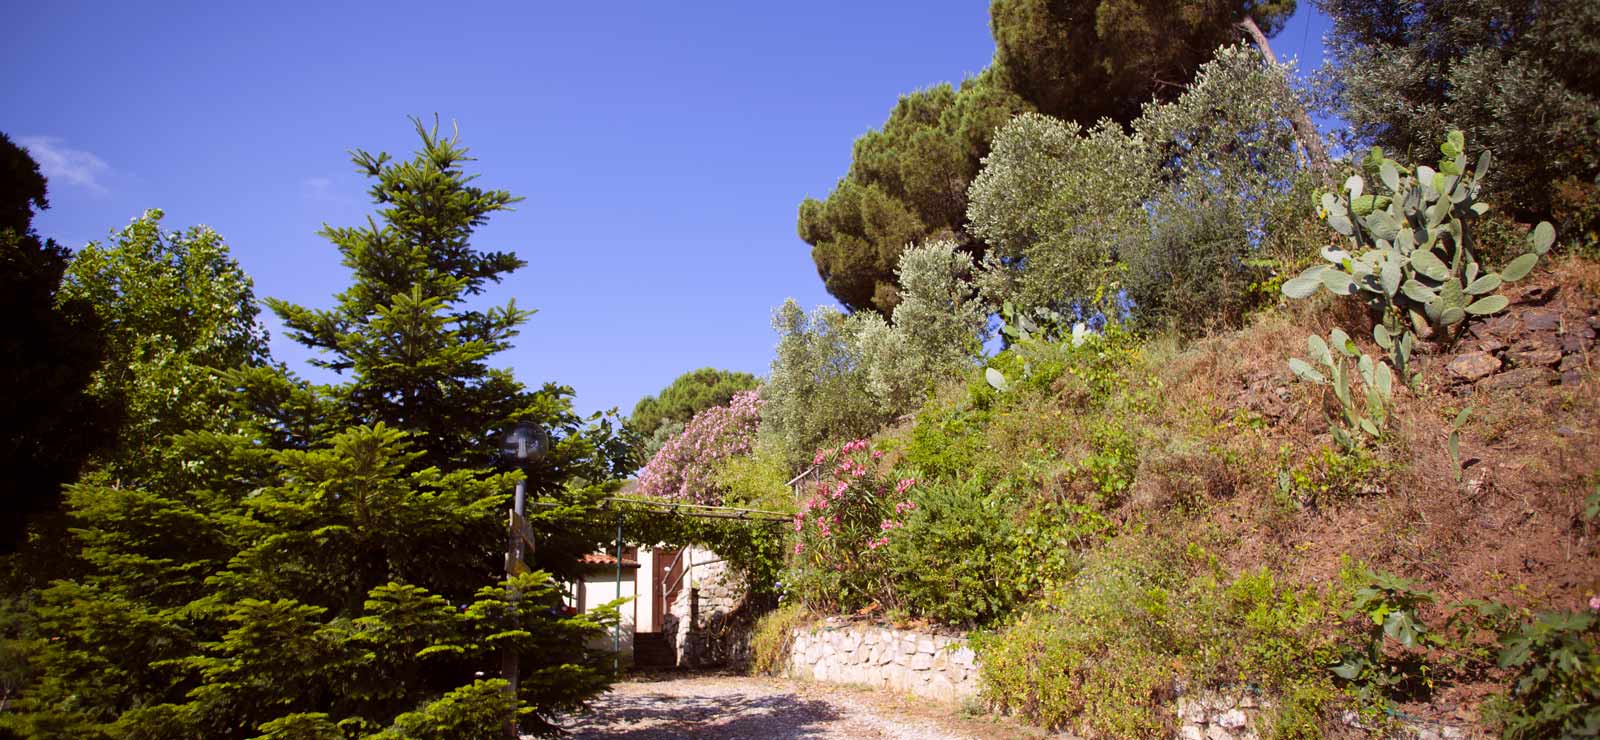 The entrance to La Lecciola